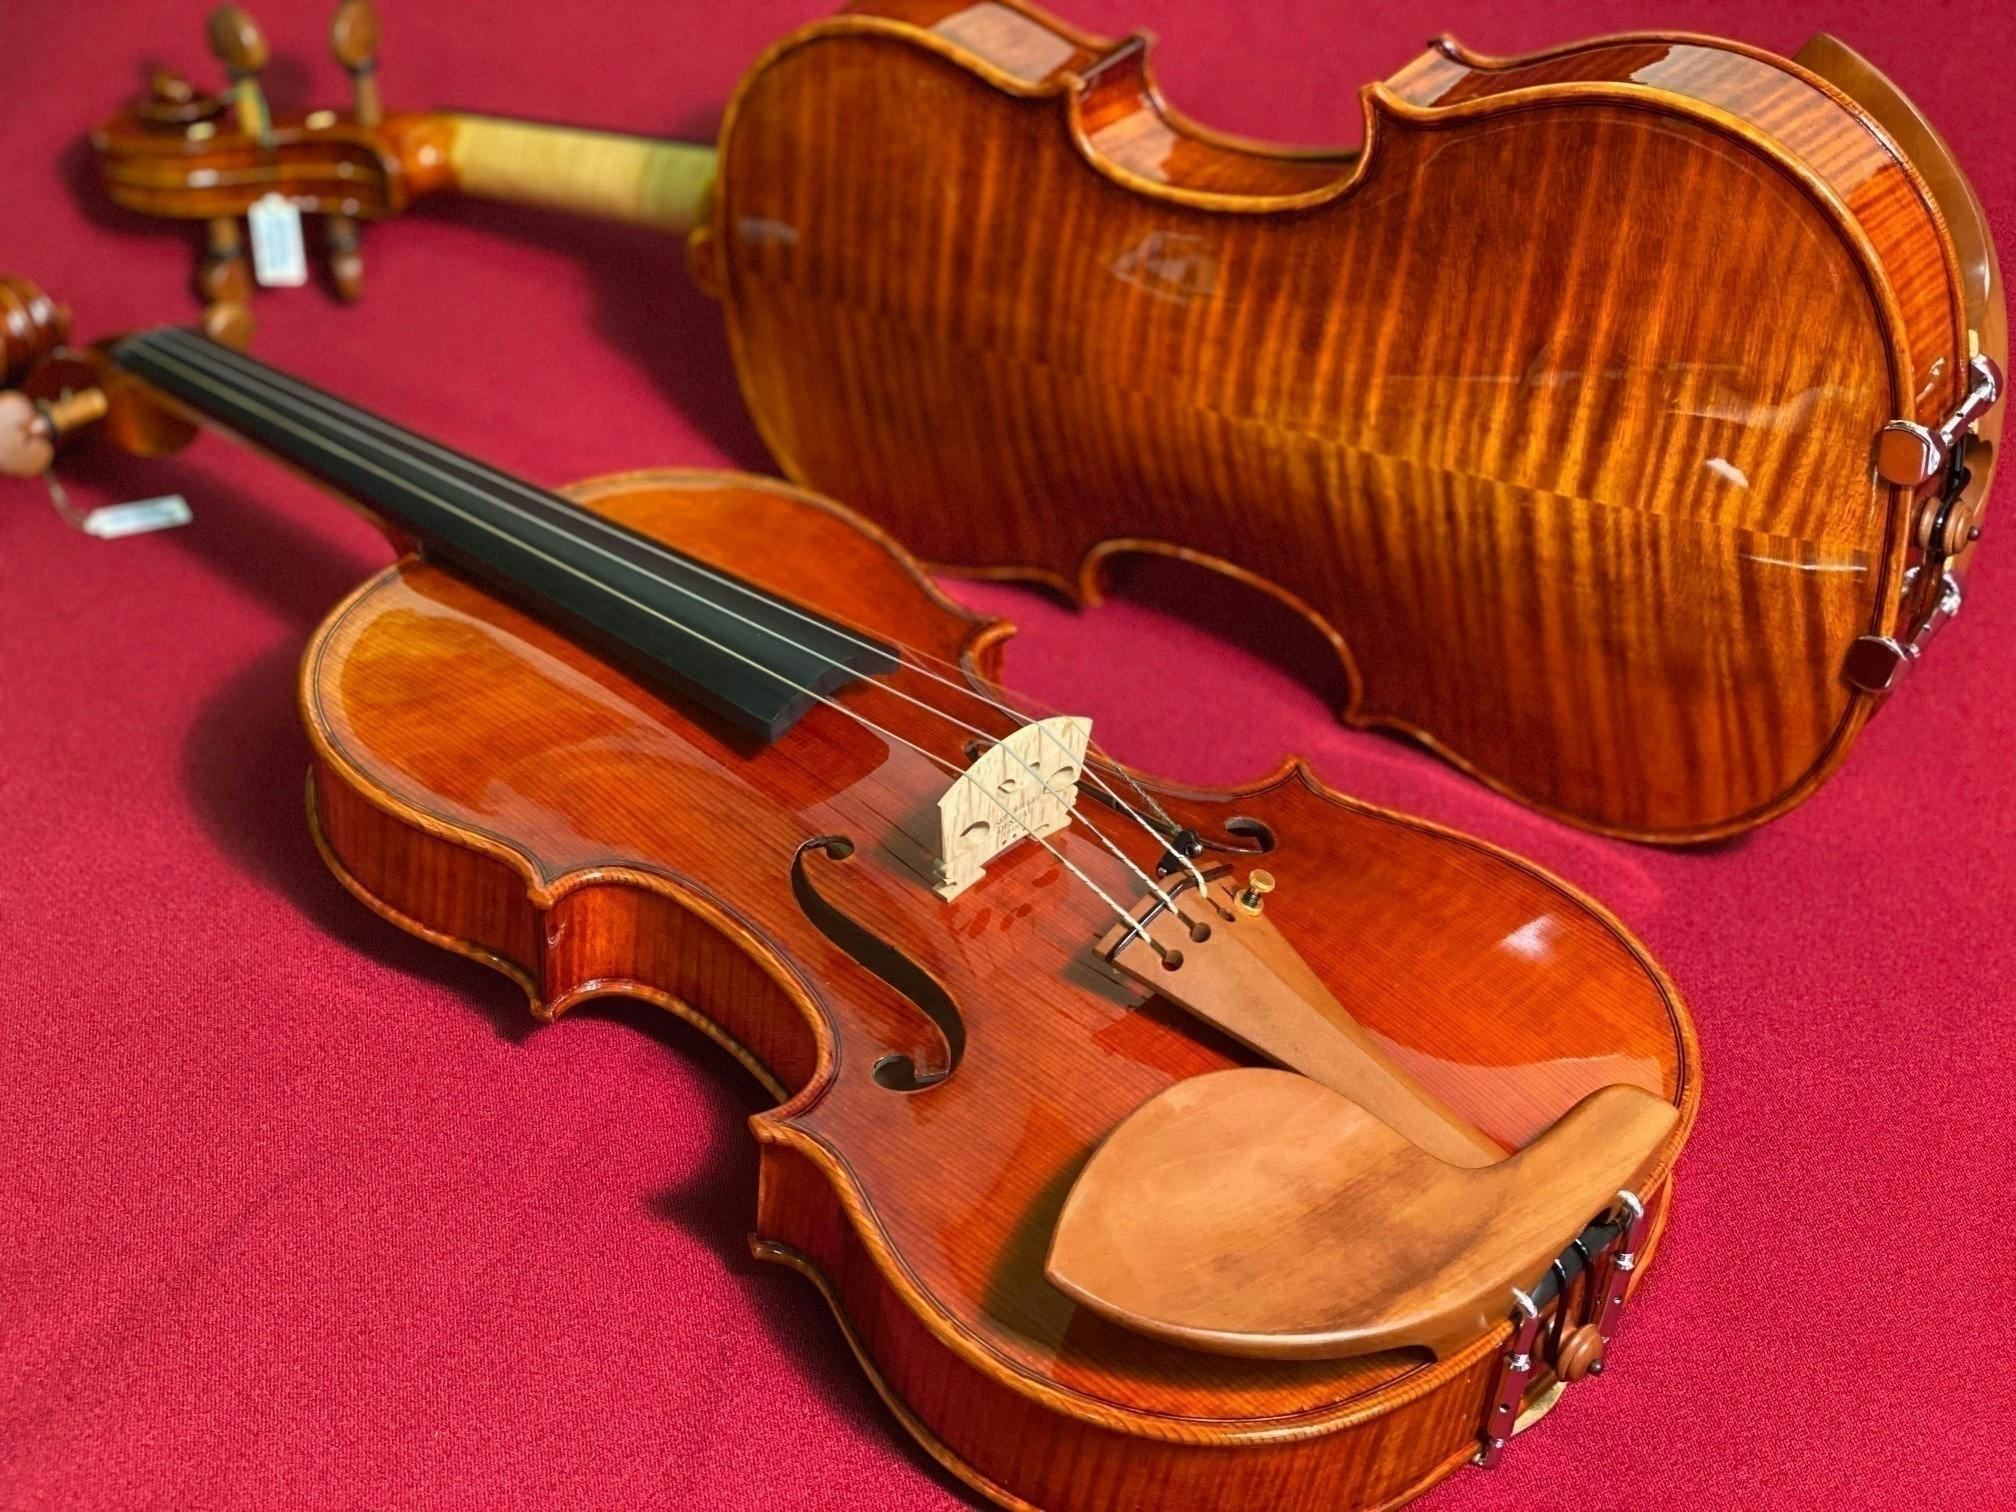 日本のバイオリン作りの文化を残したい～ 世界一の弦楽器メーカーを